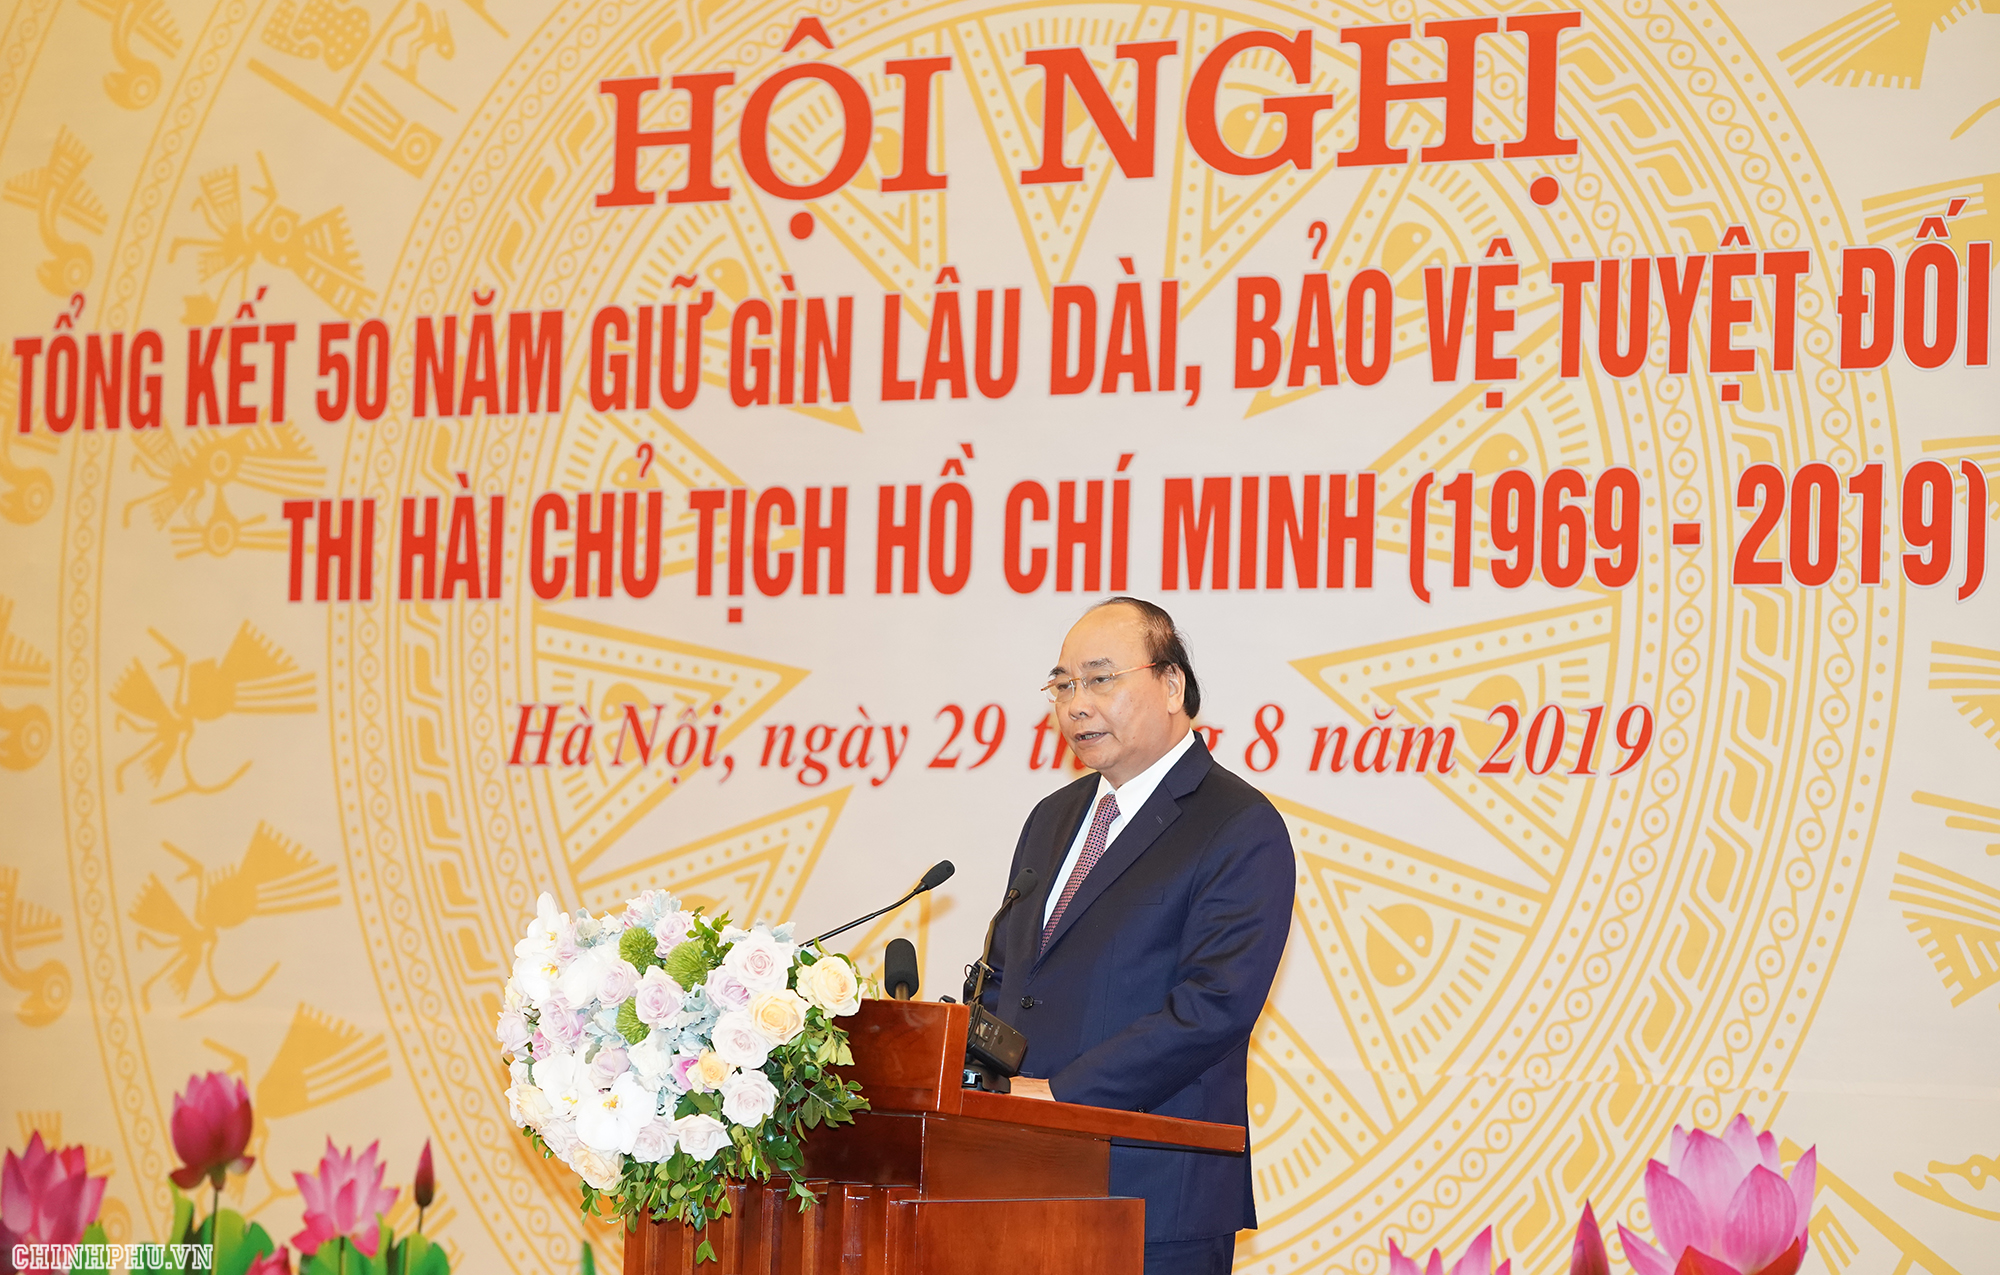 Bảo vệ tuyệt đối an toàn thi hài Chủ tịch Hồ Chí Minh cho muôn đời sau